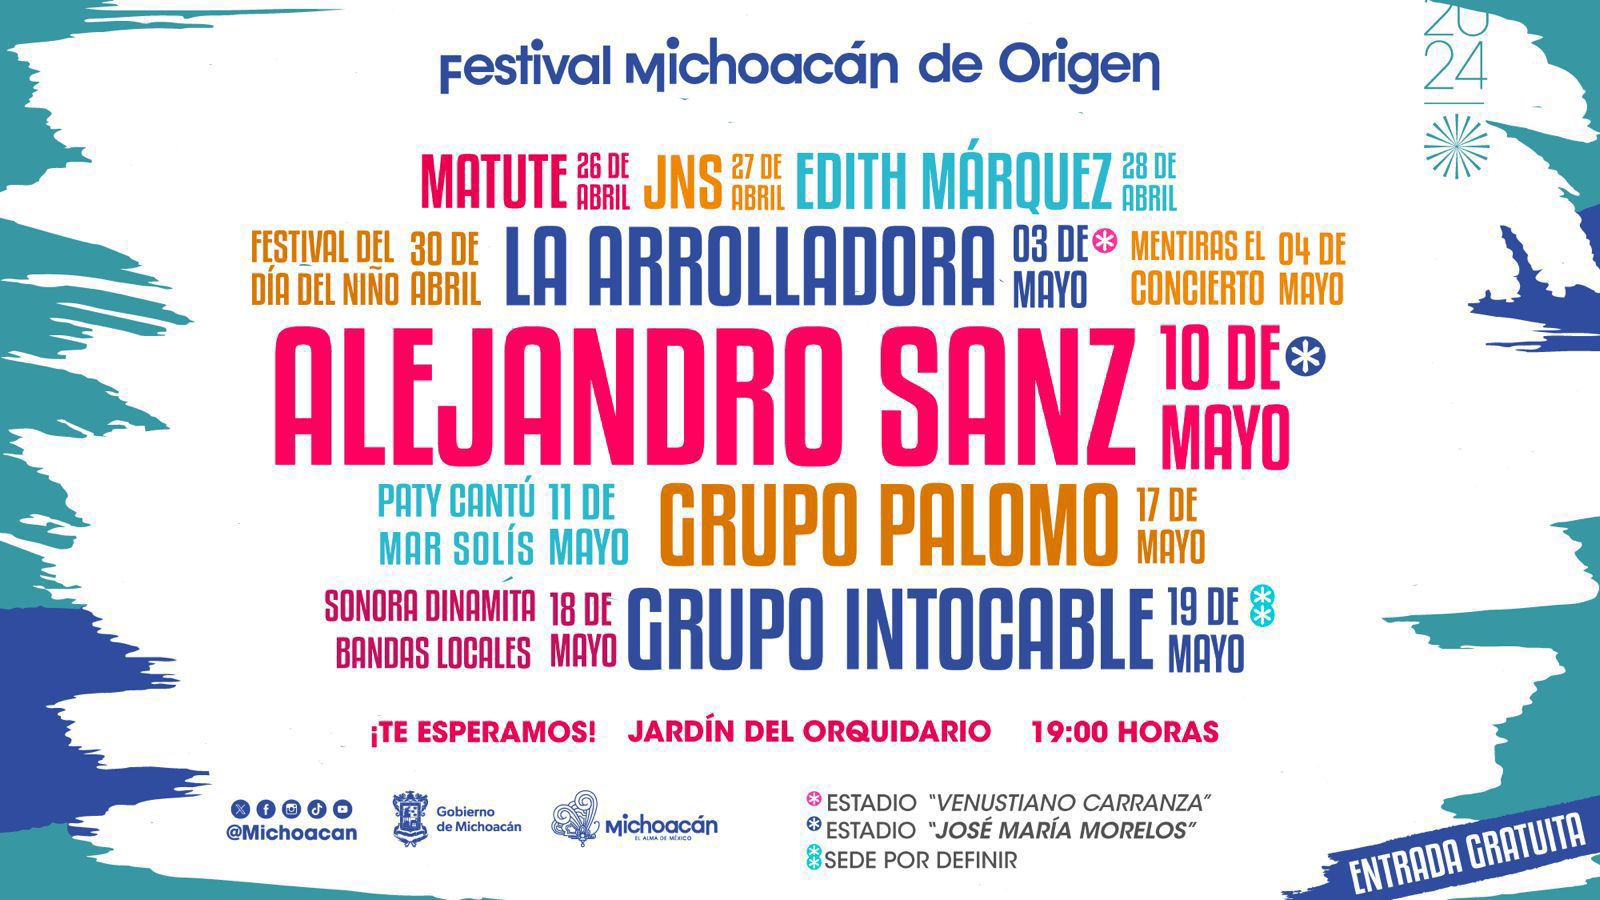 Esto es lo que tienes que saber para disfrutar del Festival Michoacán de Origen